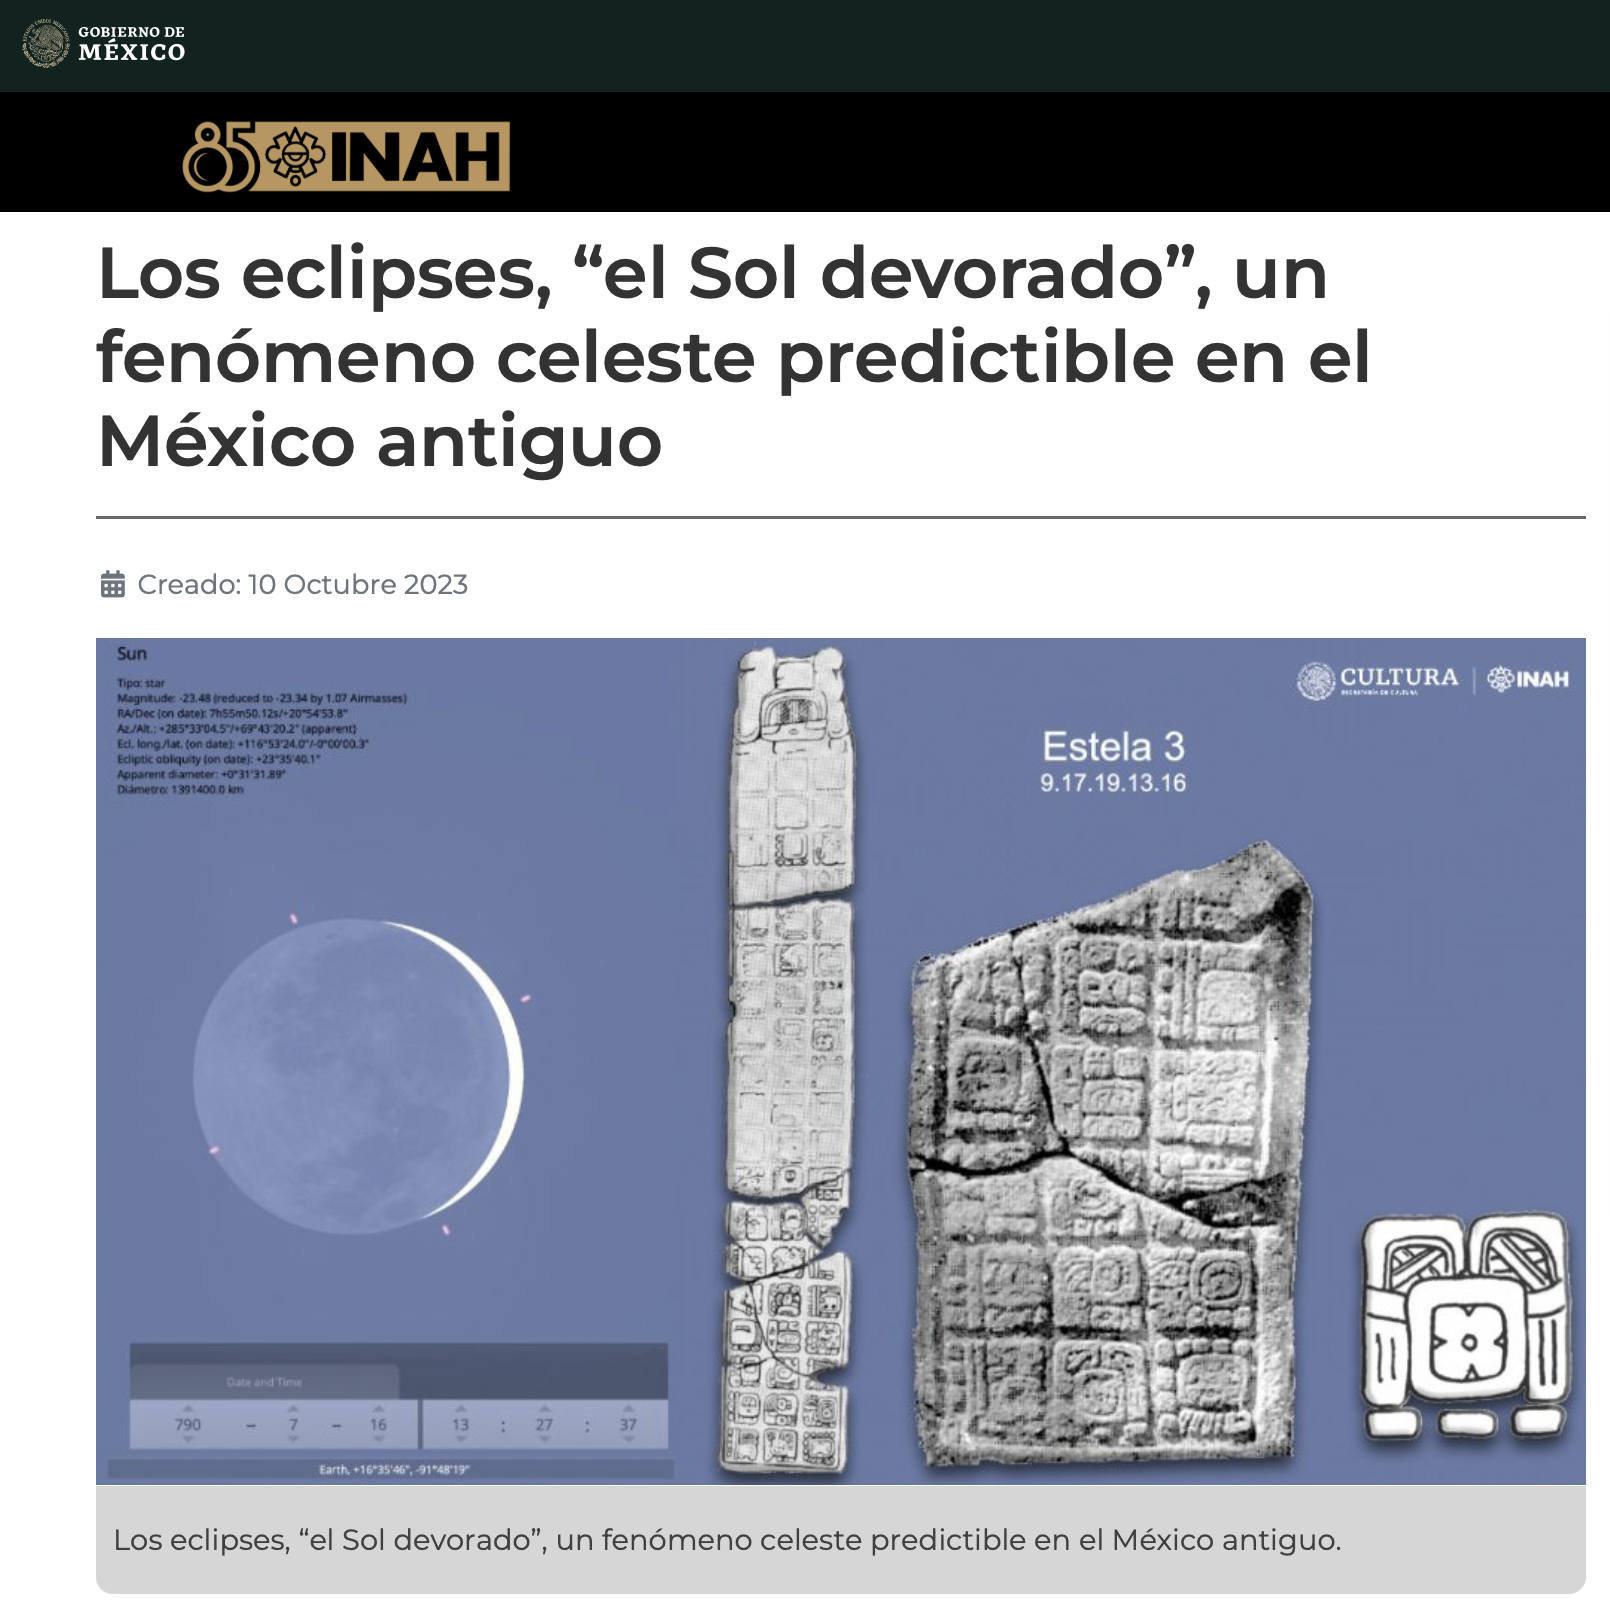 Los eclipses, “el Sol devorado”, un fenómeno celeste predictible en el México antiguo